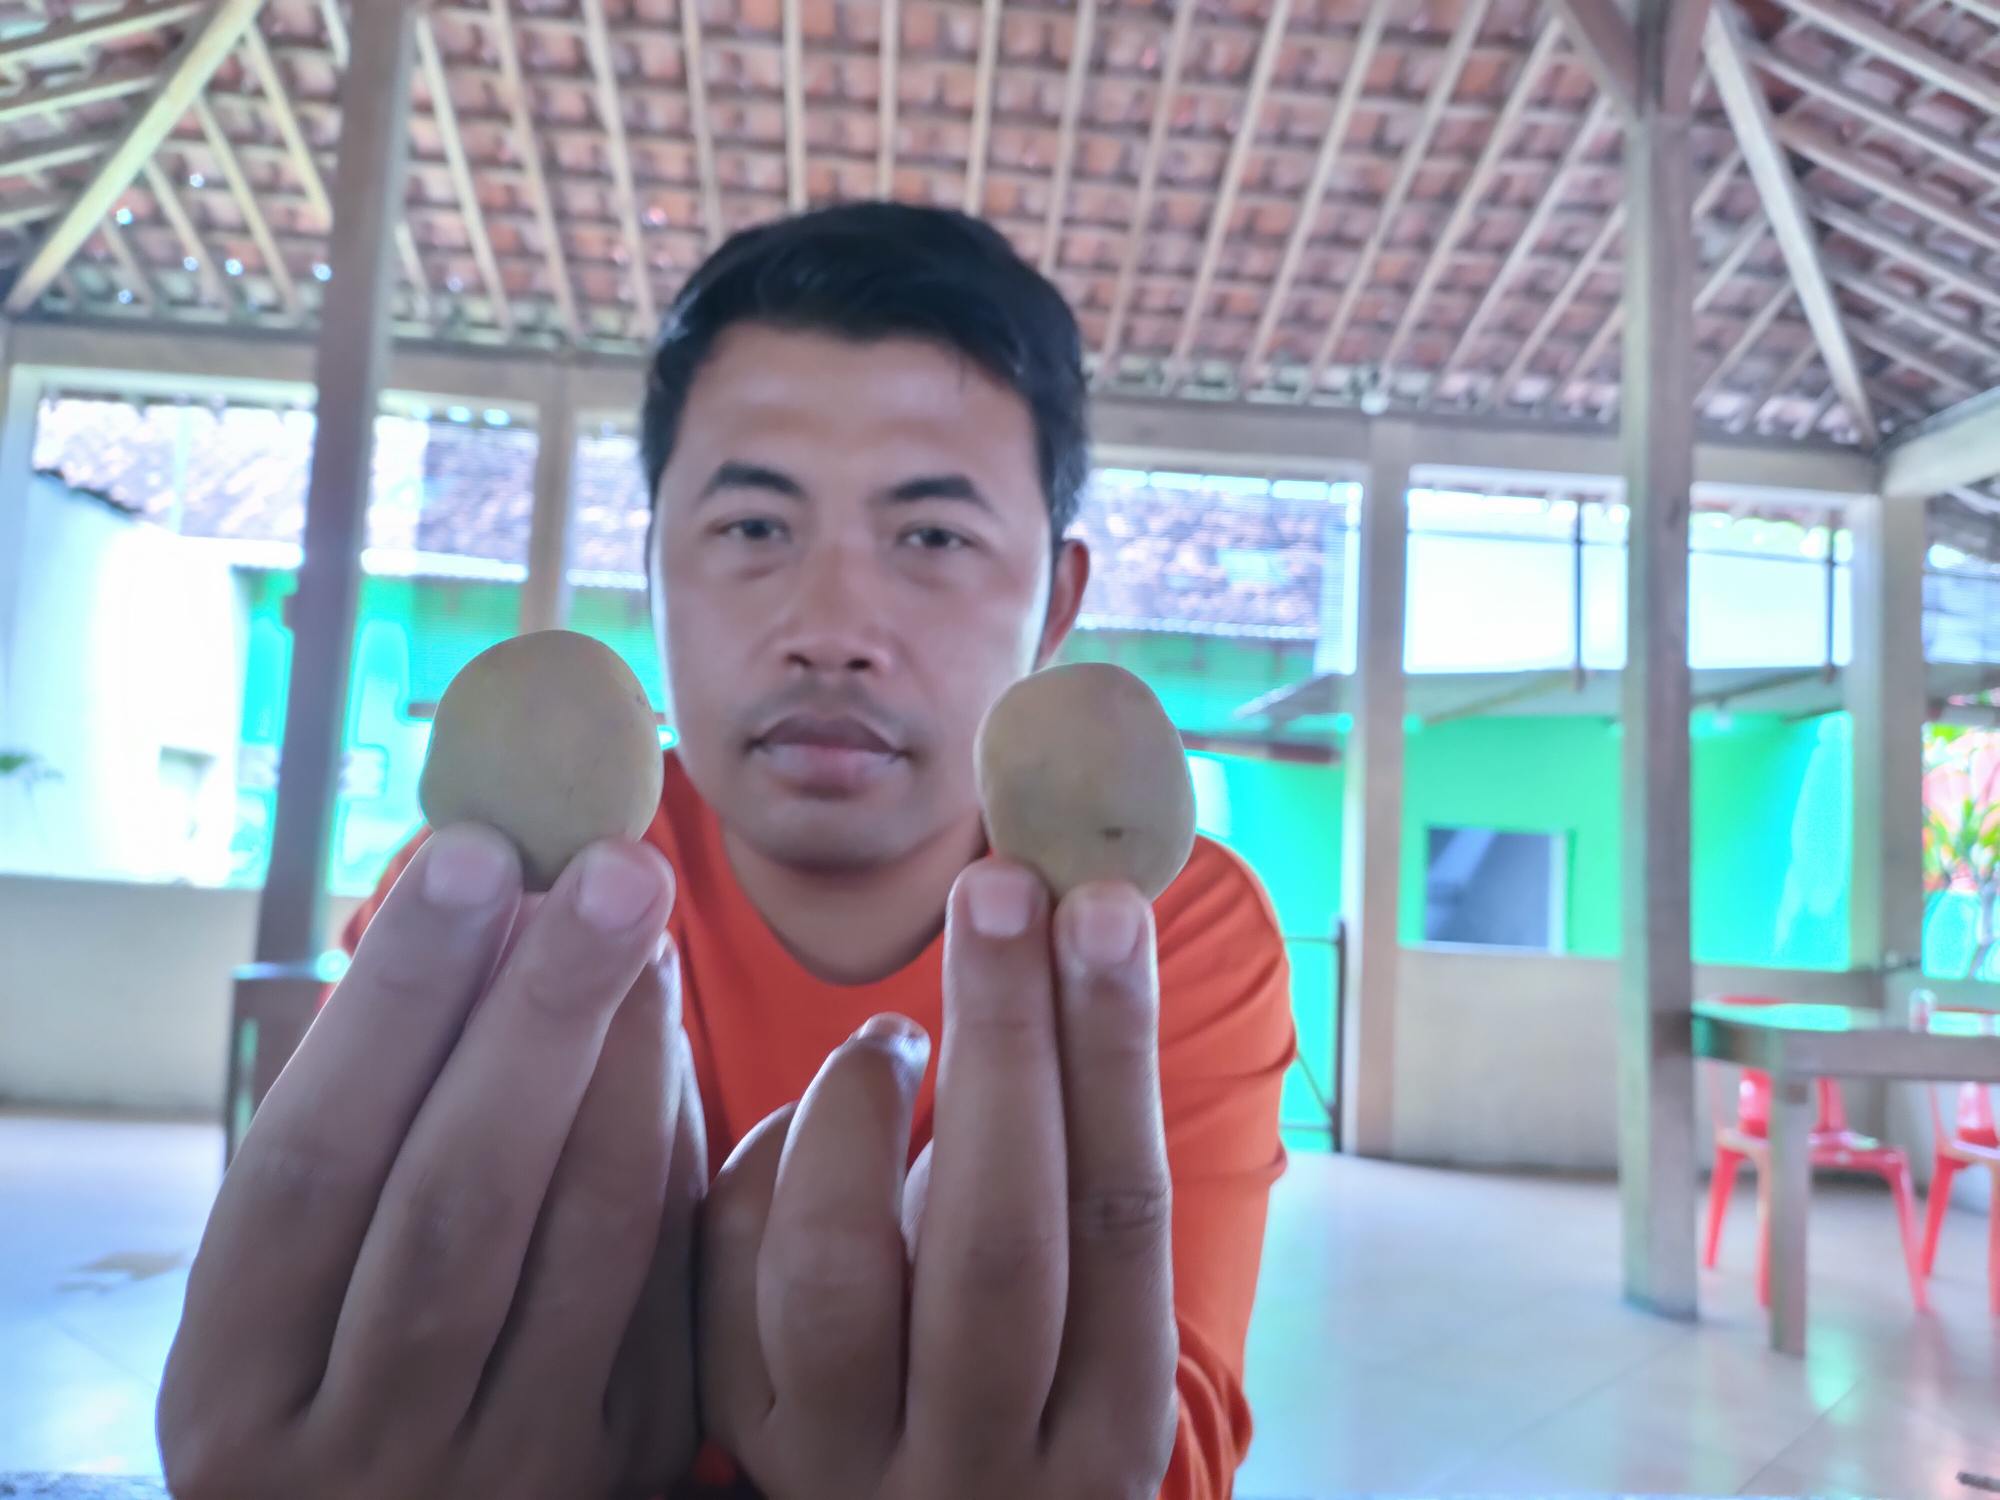 Penampakan sembako kentang yang diterima warga Desa Wonotolo, Gondang, Sragen dari program BPNT yang ukurannya sangat kecil dan dinilai tidak layak. Foto/Wardoyo